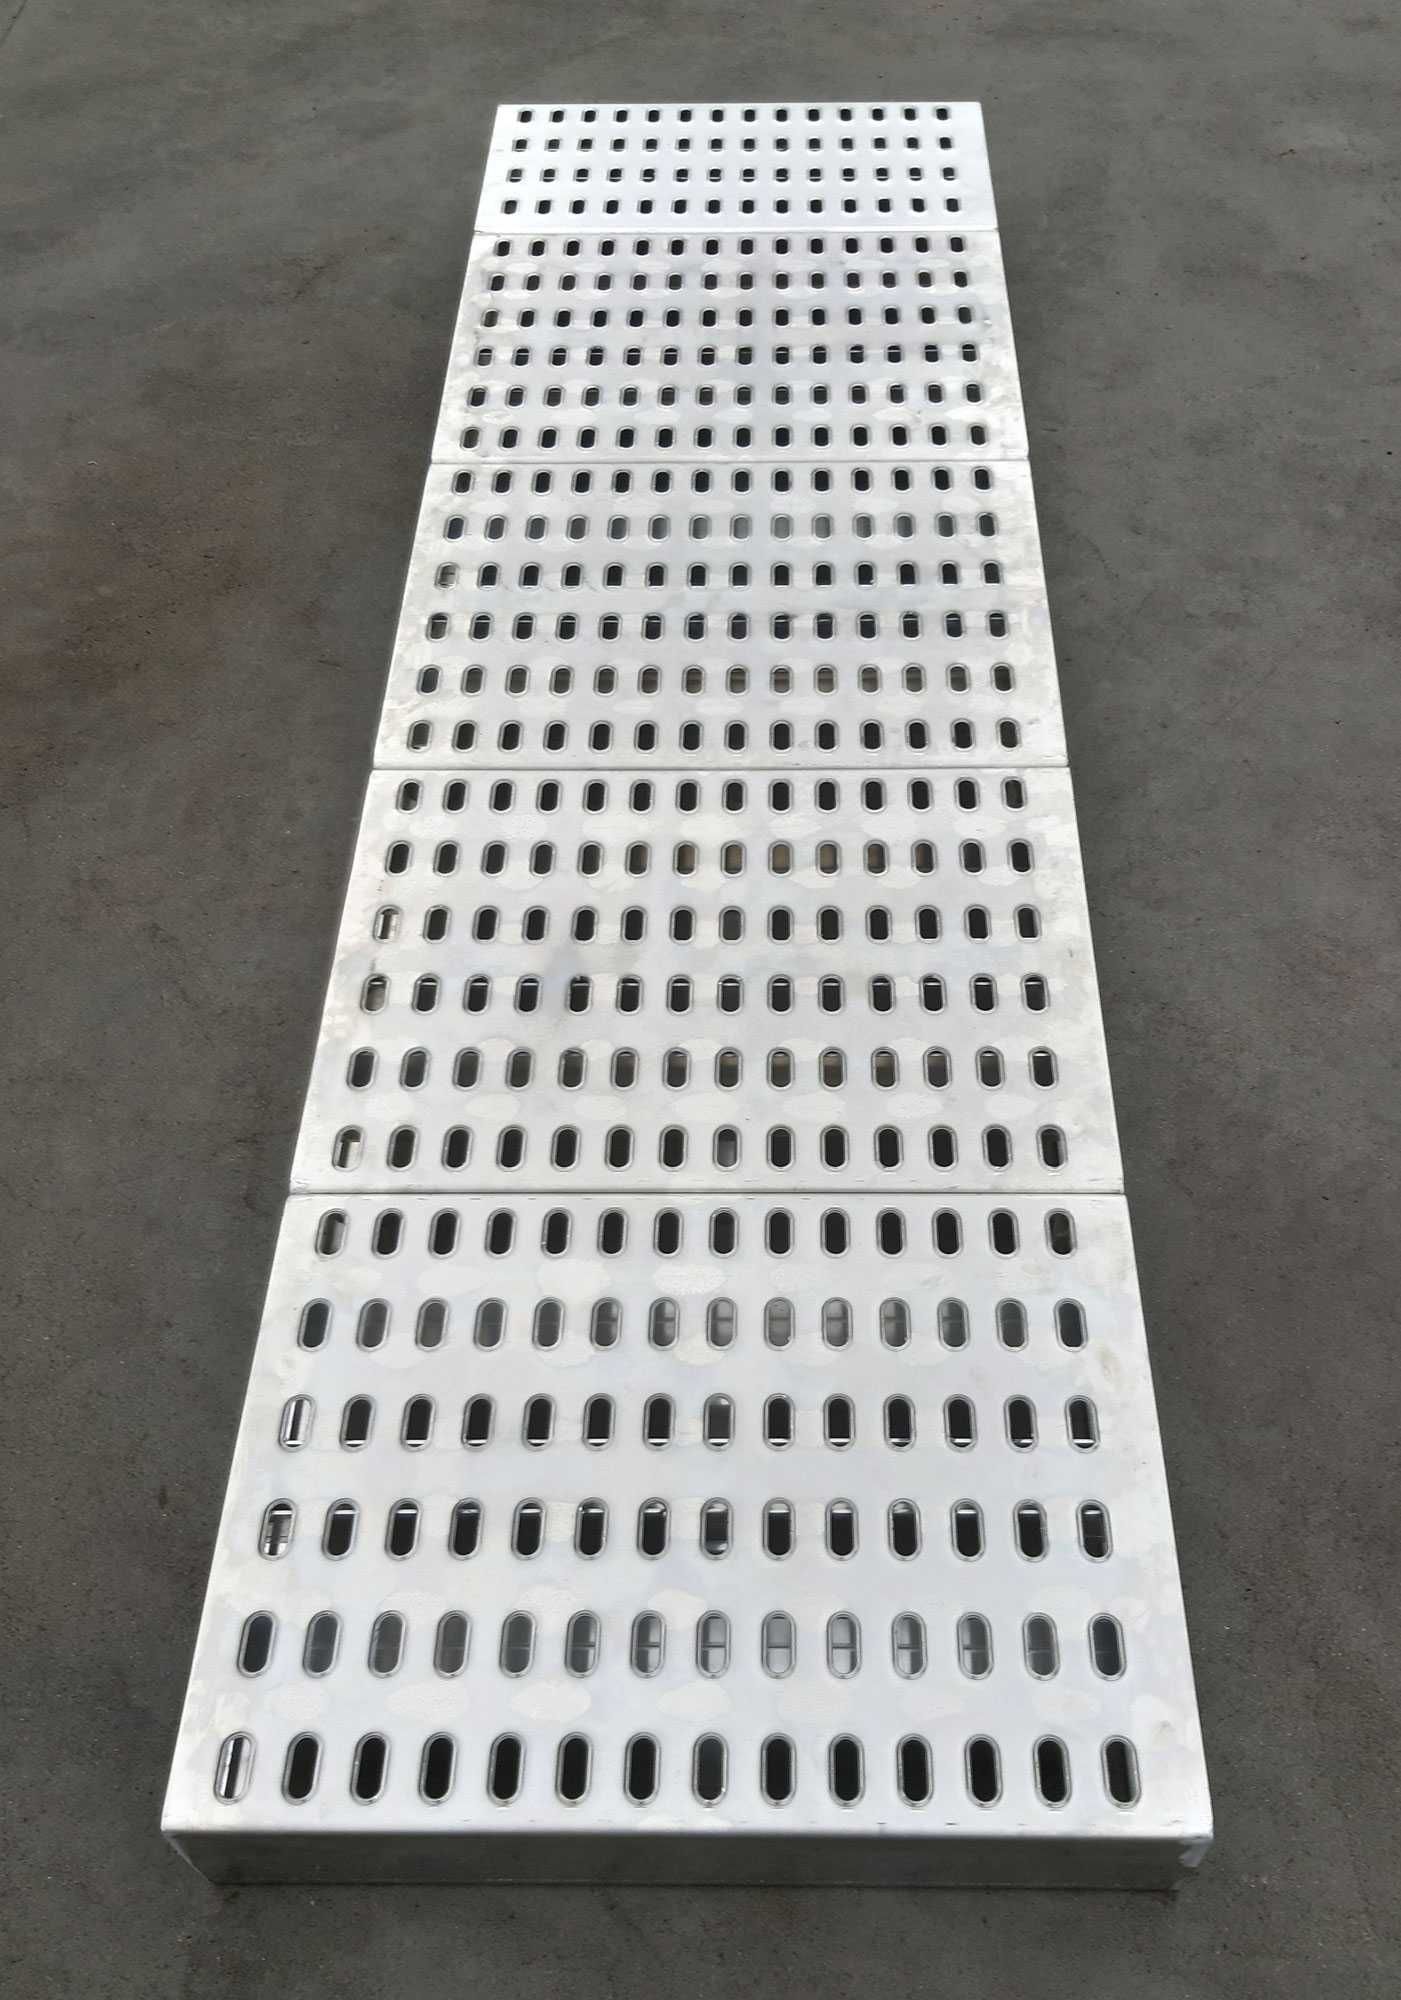 Panel podłogowy aluminiowy 240 LOHR Najazd Platforma Rampa